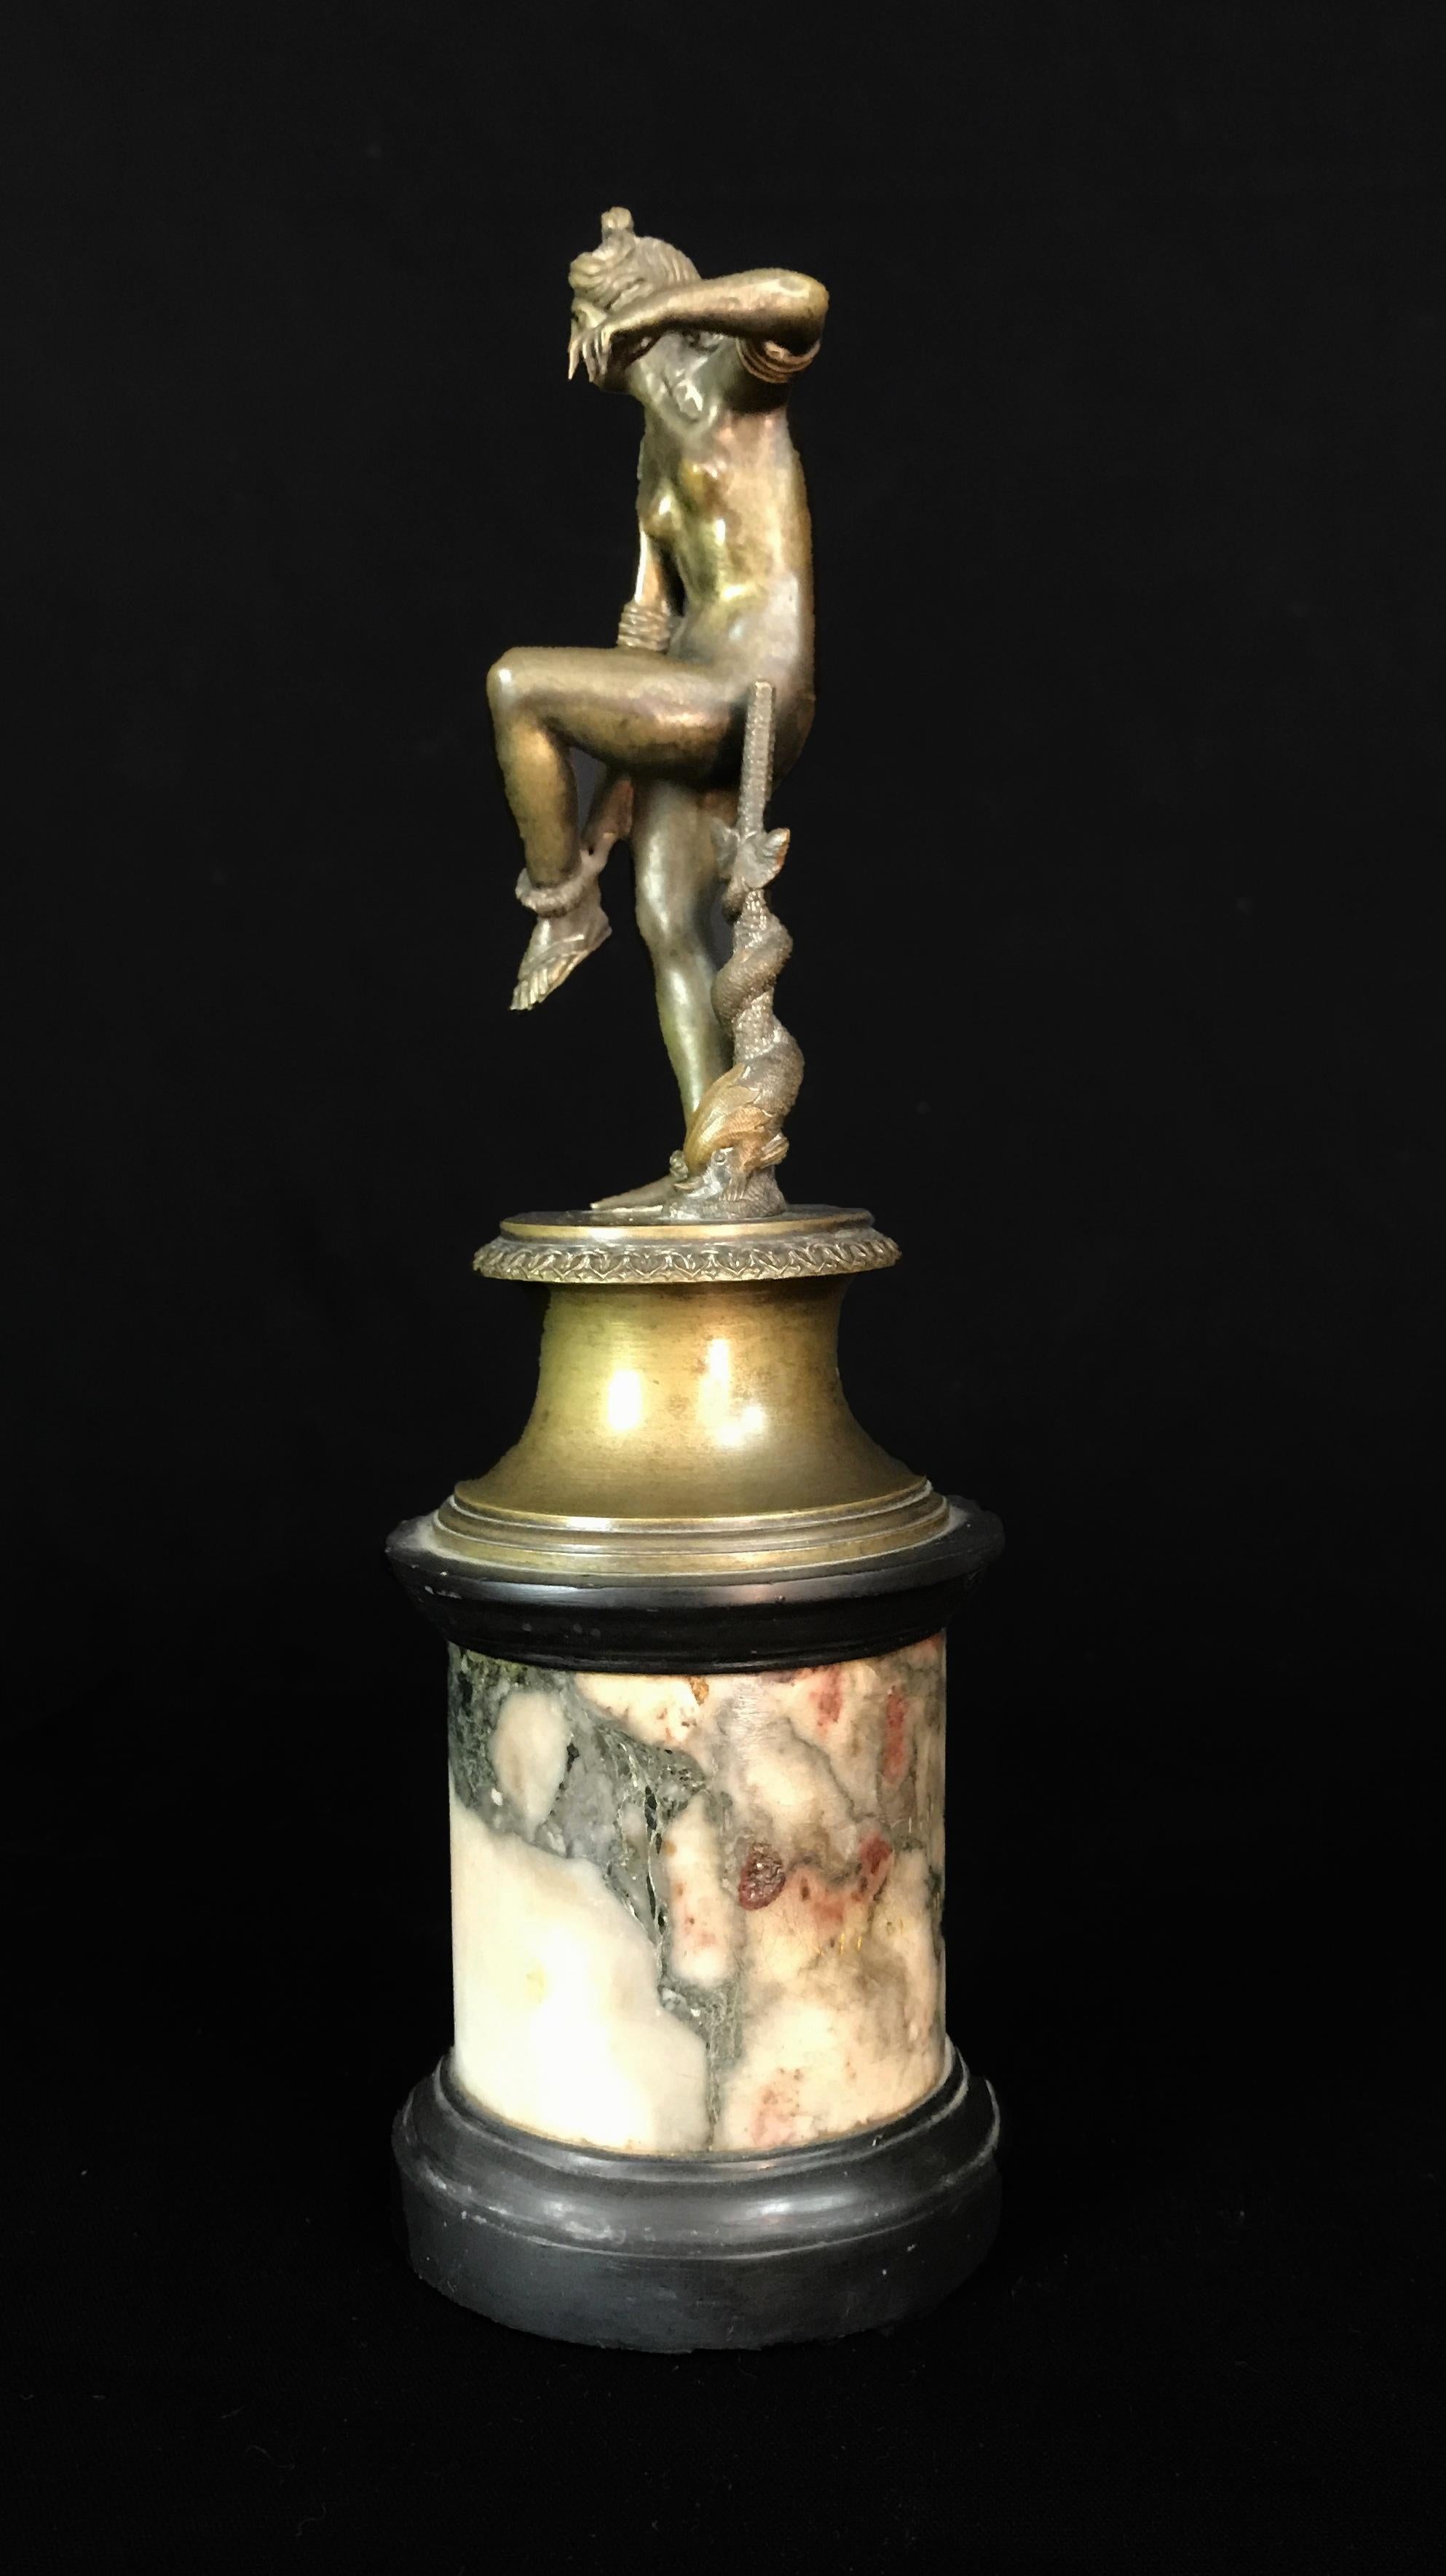 Sculpture italienne du 18ème siècle avec Vénus se rendant à sa Sandale

Cette sculpture en bronze représente Vénus en train d'enlever sa sandale. Réalisée à l'époque néoclassique en Italie, elle consiste en une sculpture en bronze de la déesse